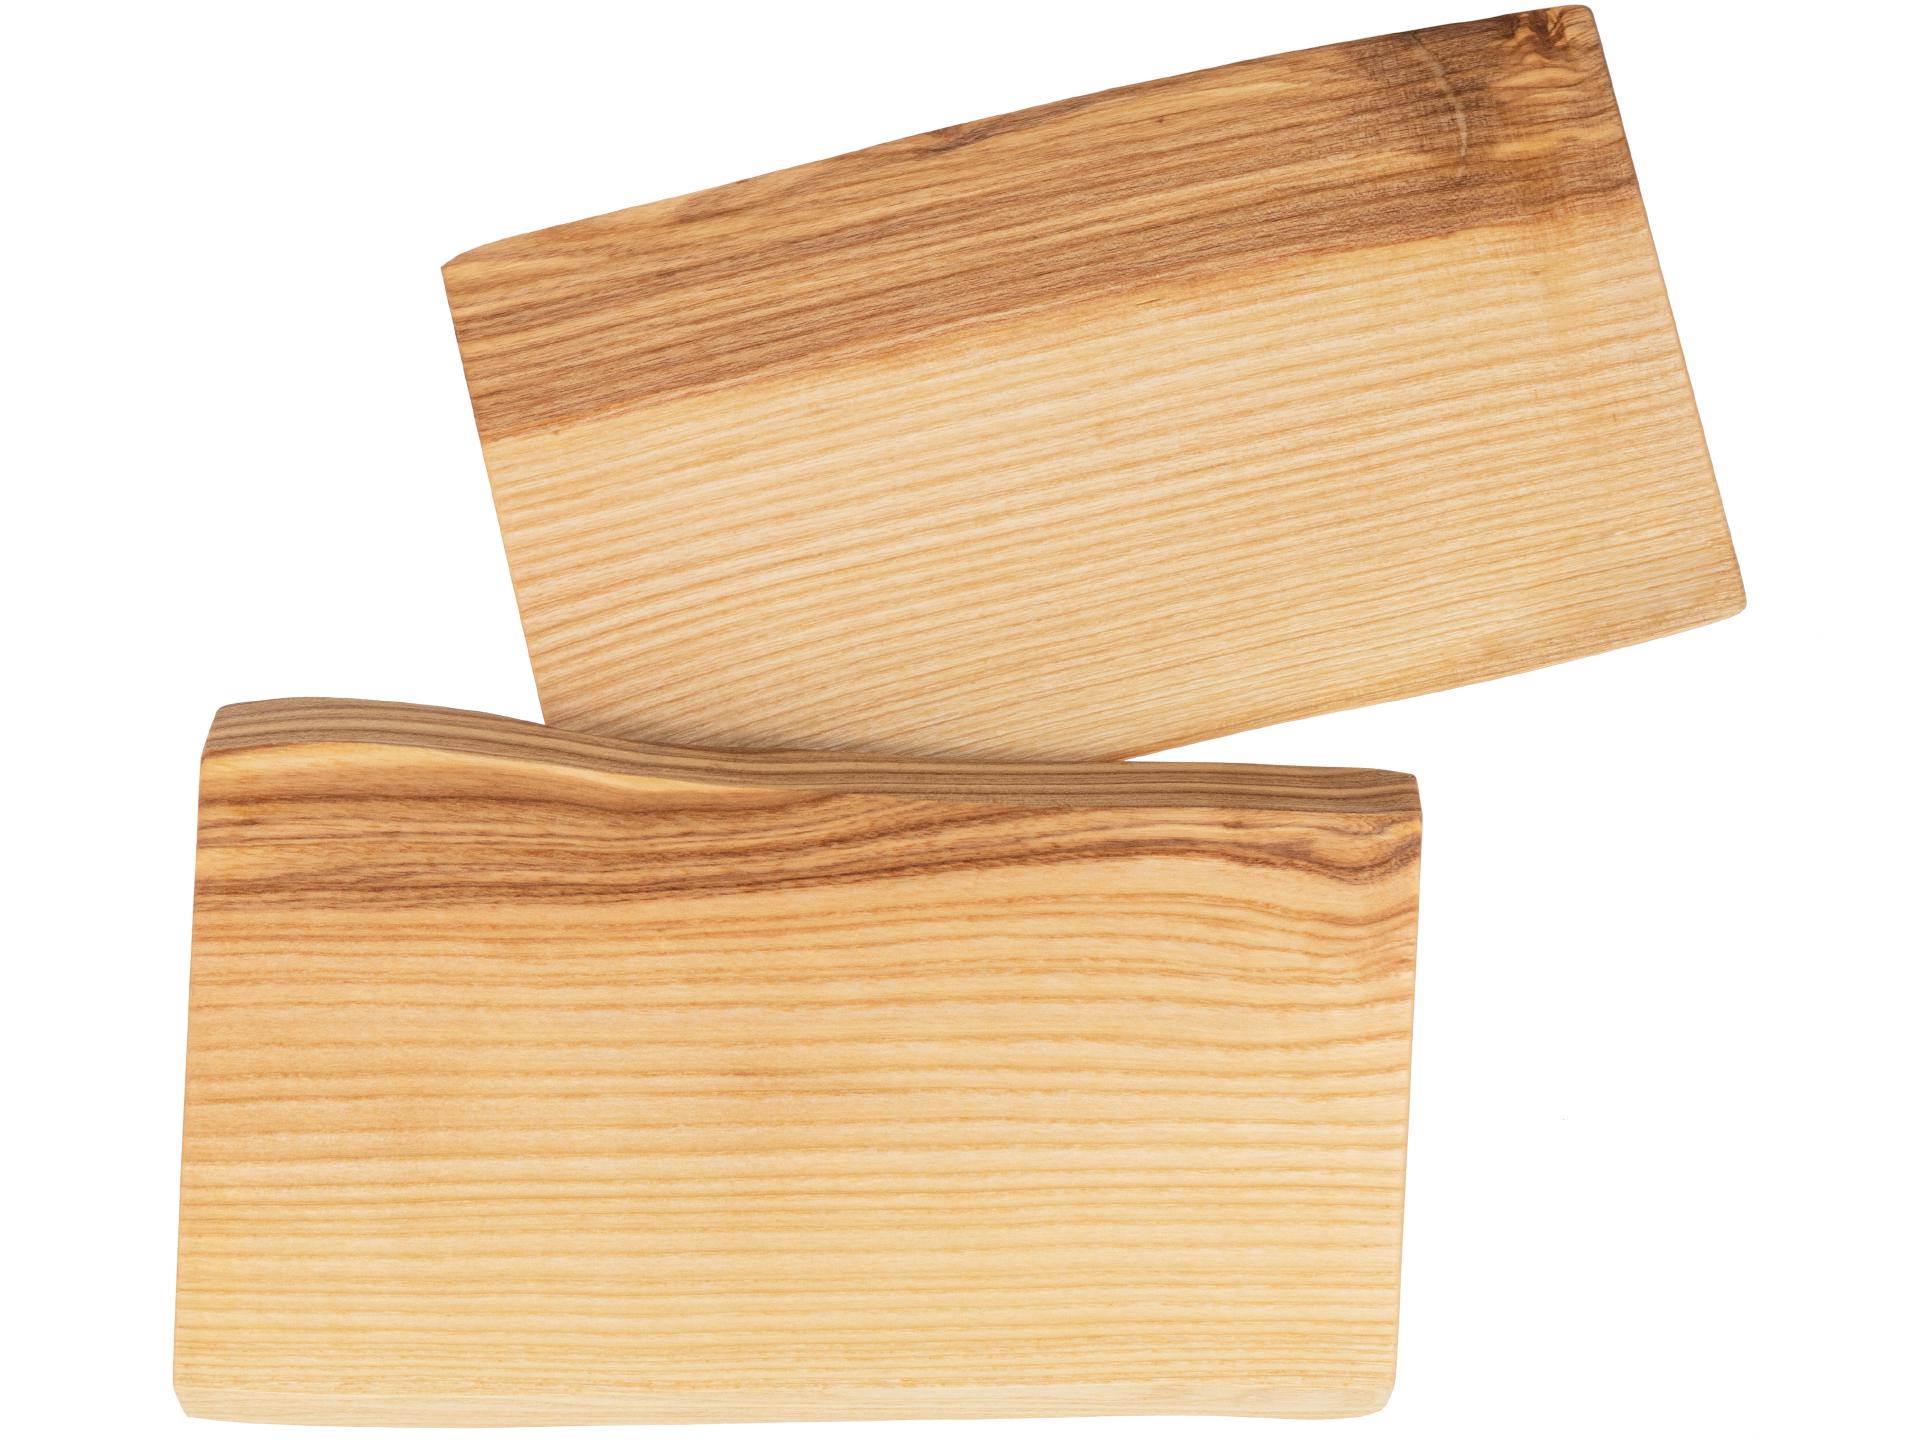 Holz Schneidebrett aus Kern Esche geölt mit Baumkante geschliffen 22mm dick 27 x 14-16 cm